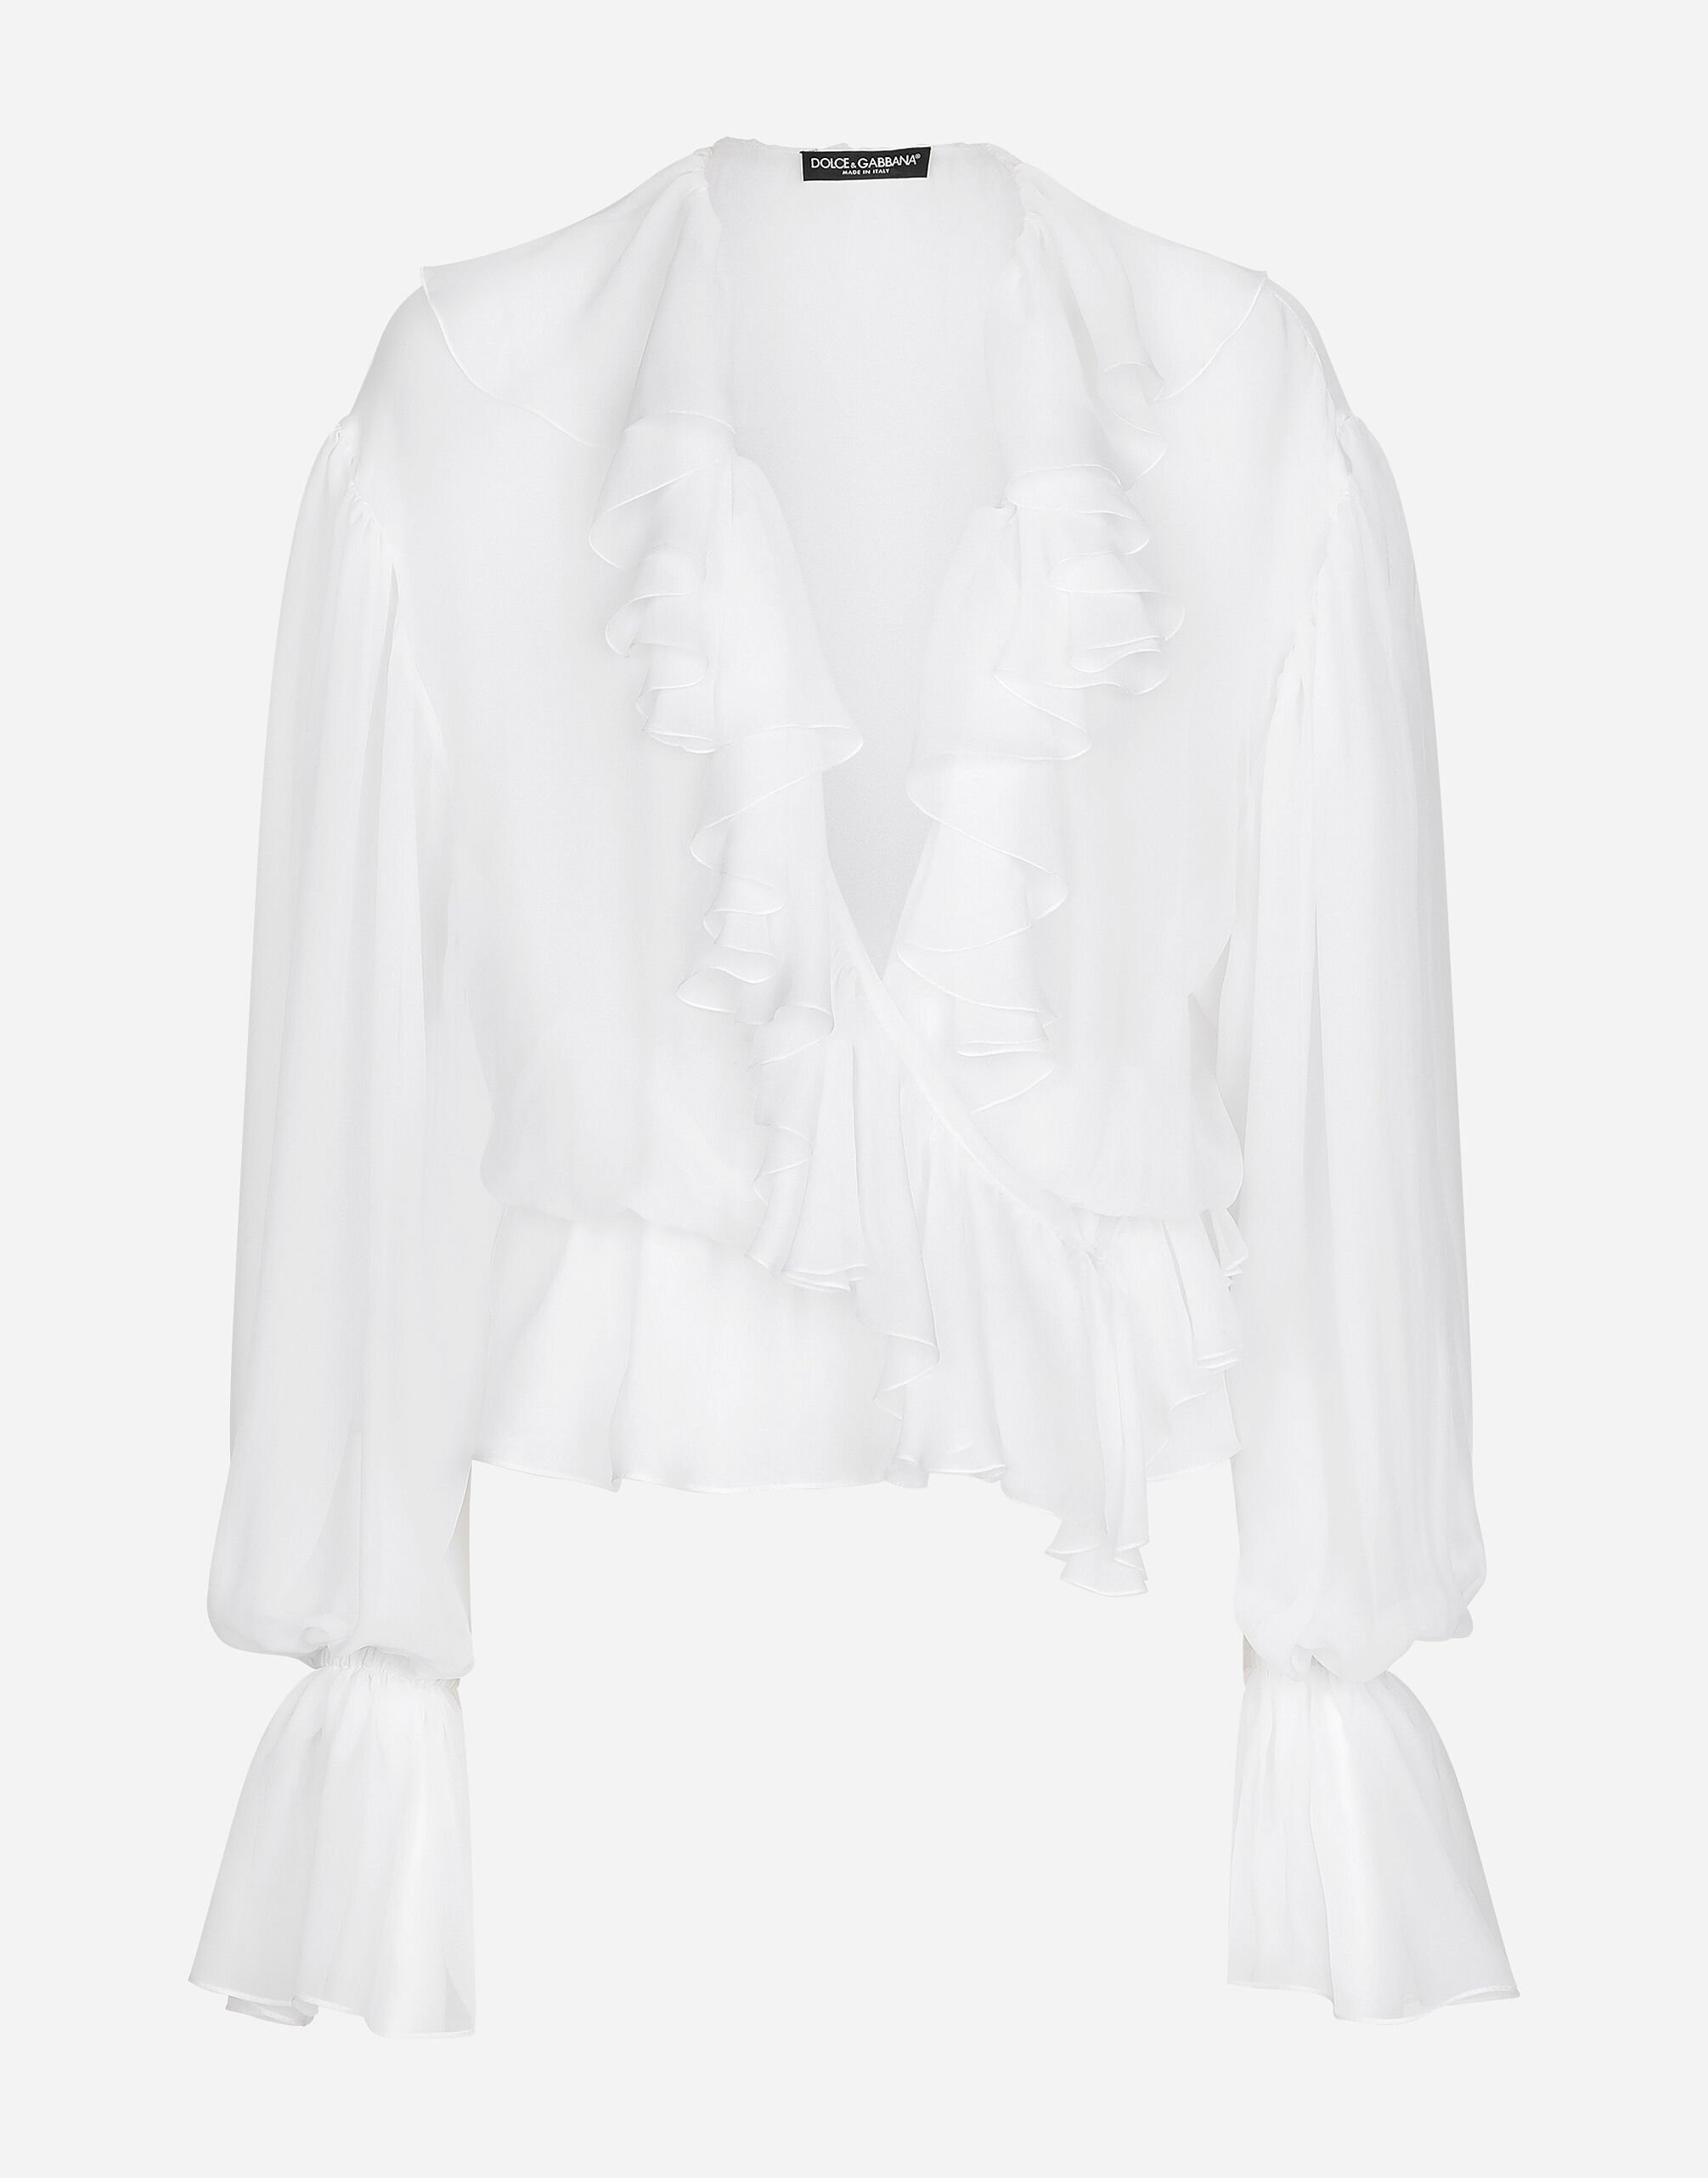 Dolce & Gabbana Chiffon blouse with ruffles Black F72X4TFLMSC